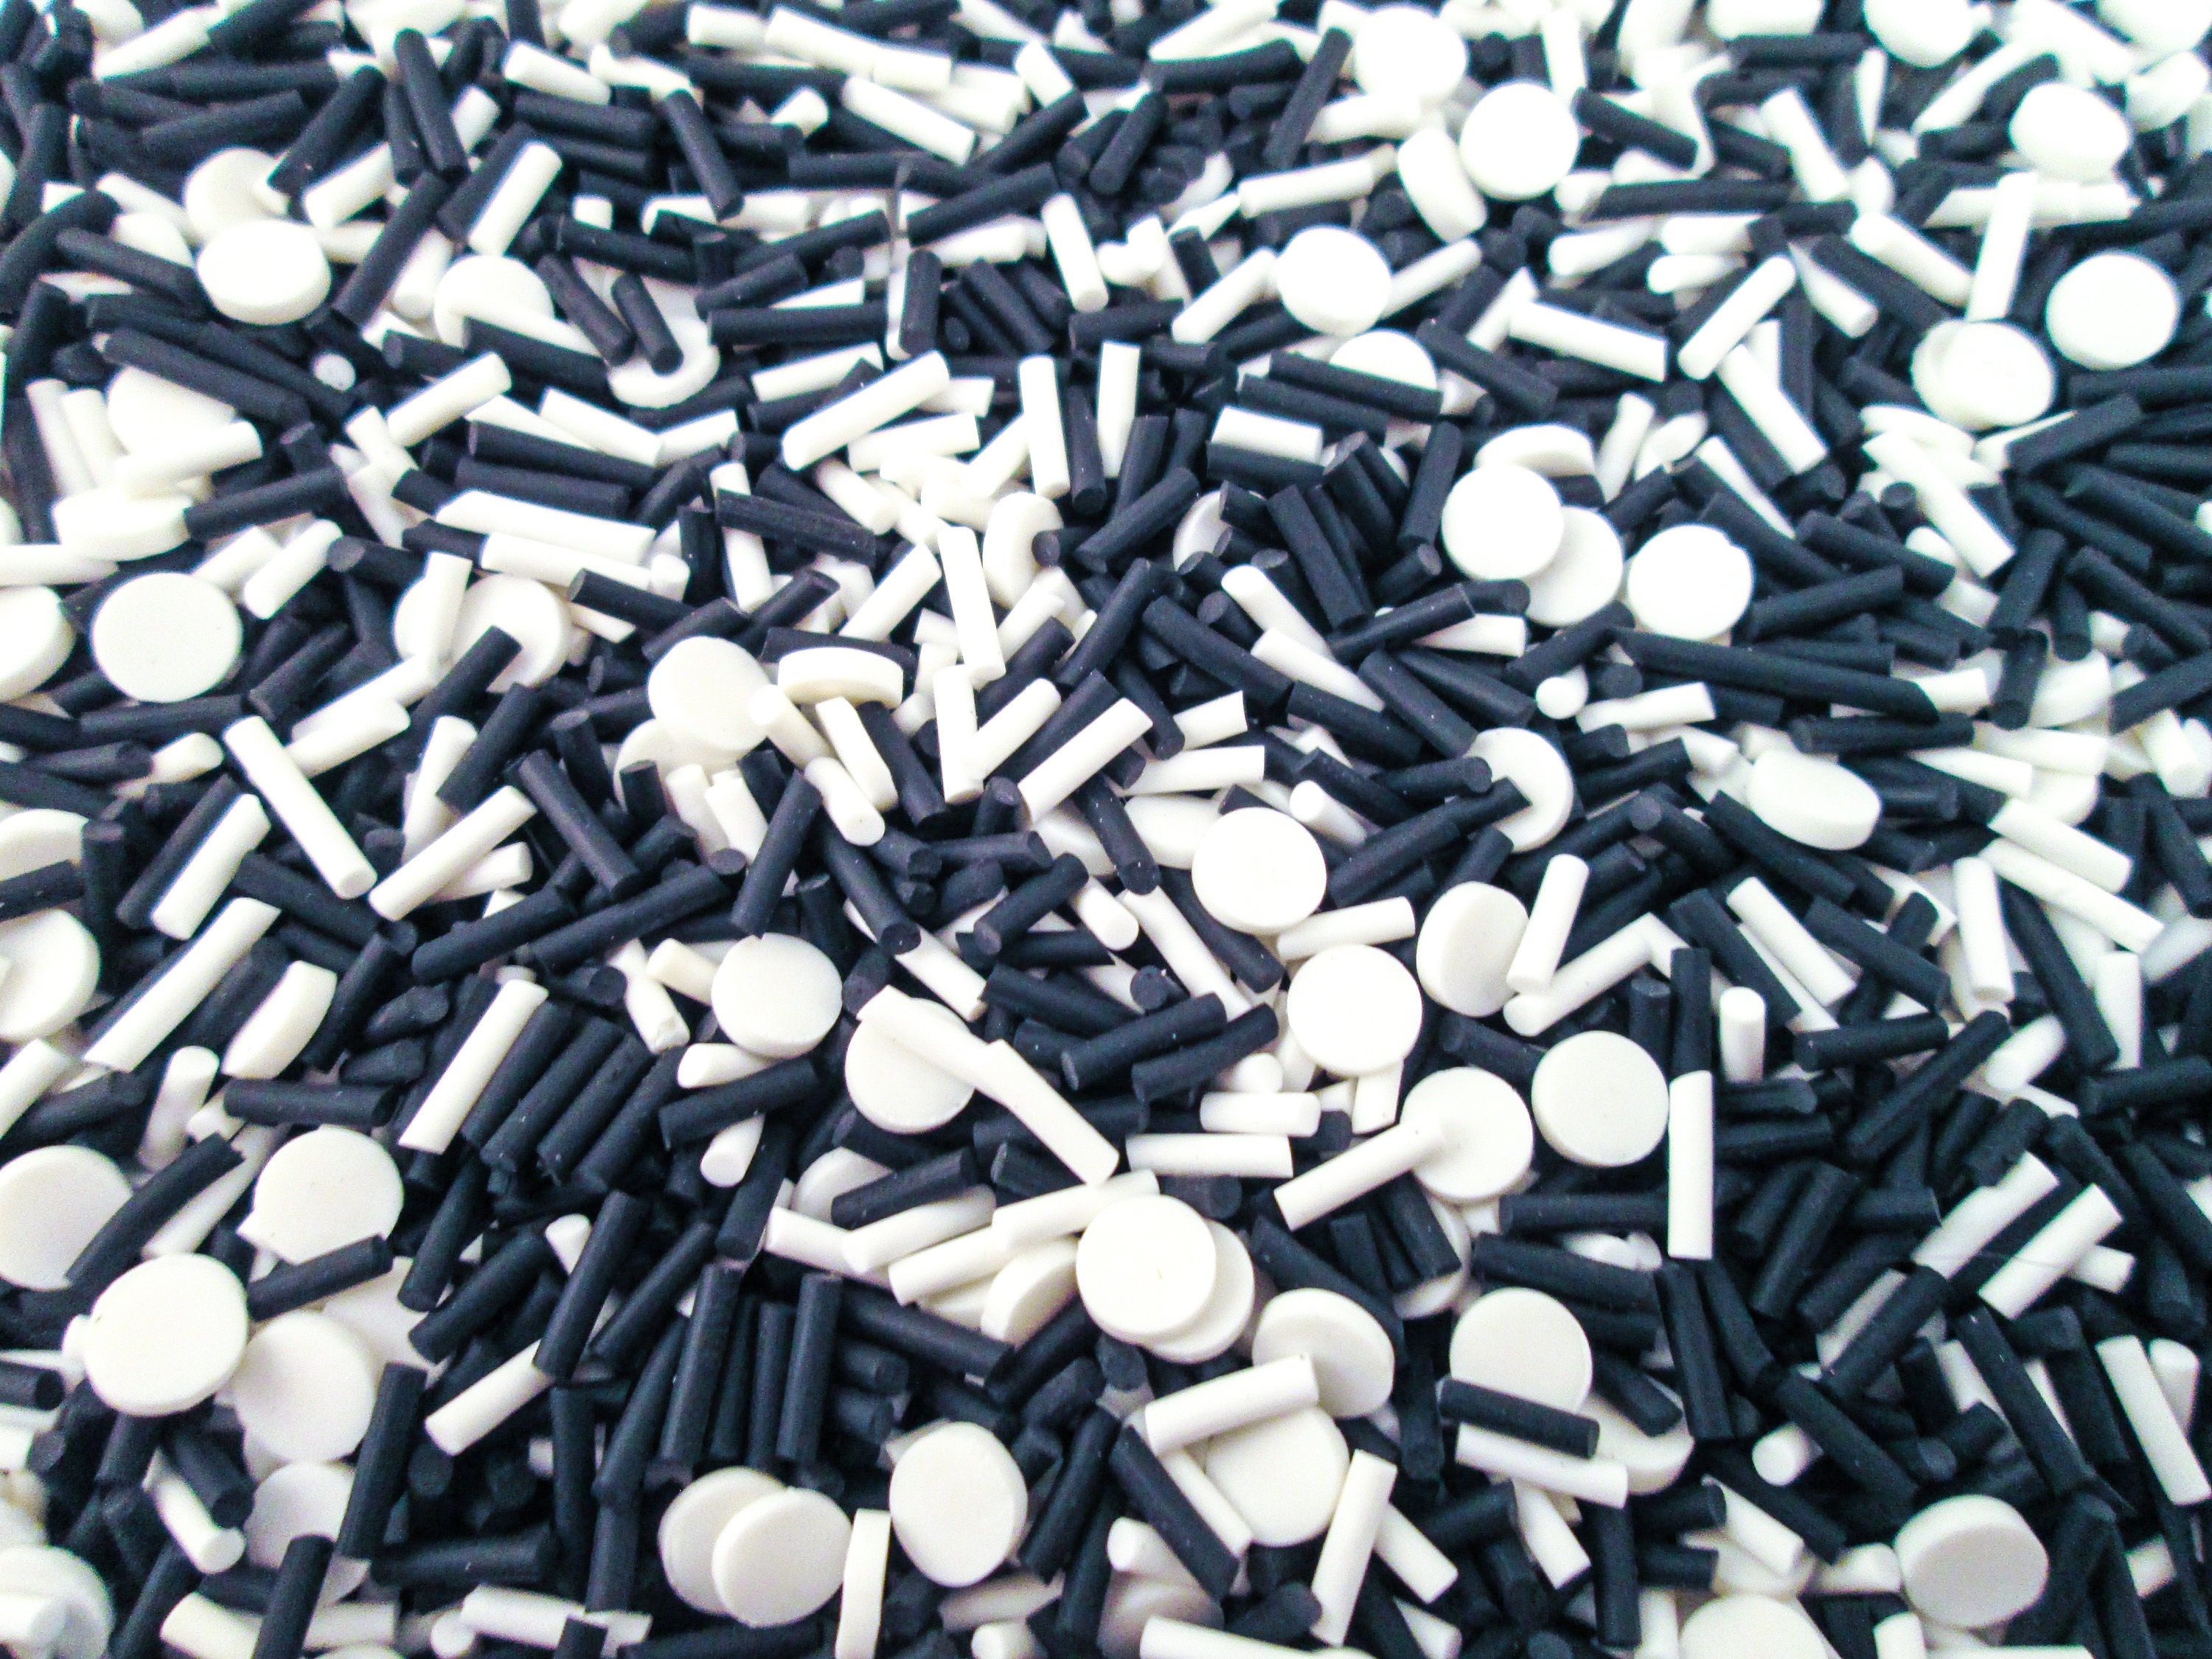 PP Plastic Bowls with Lids  Clear, White, Black - Bonson AU